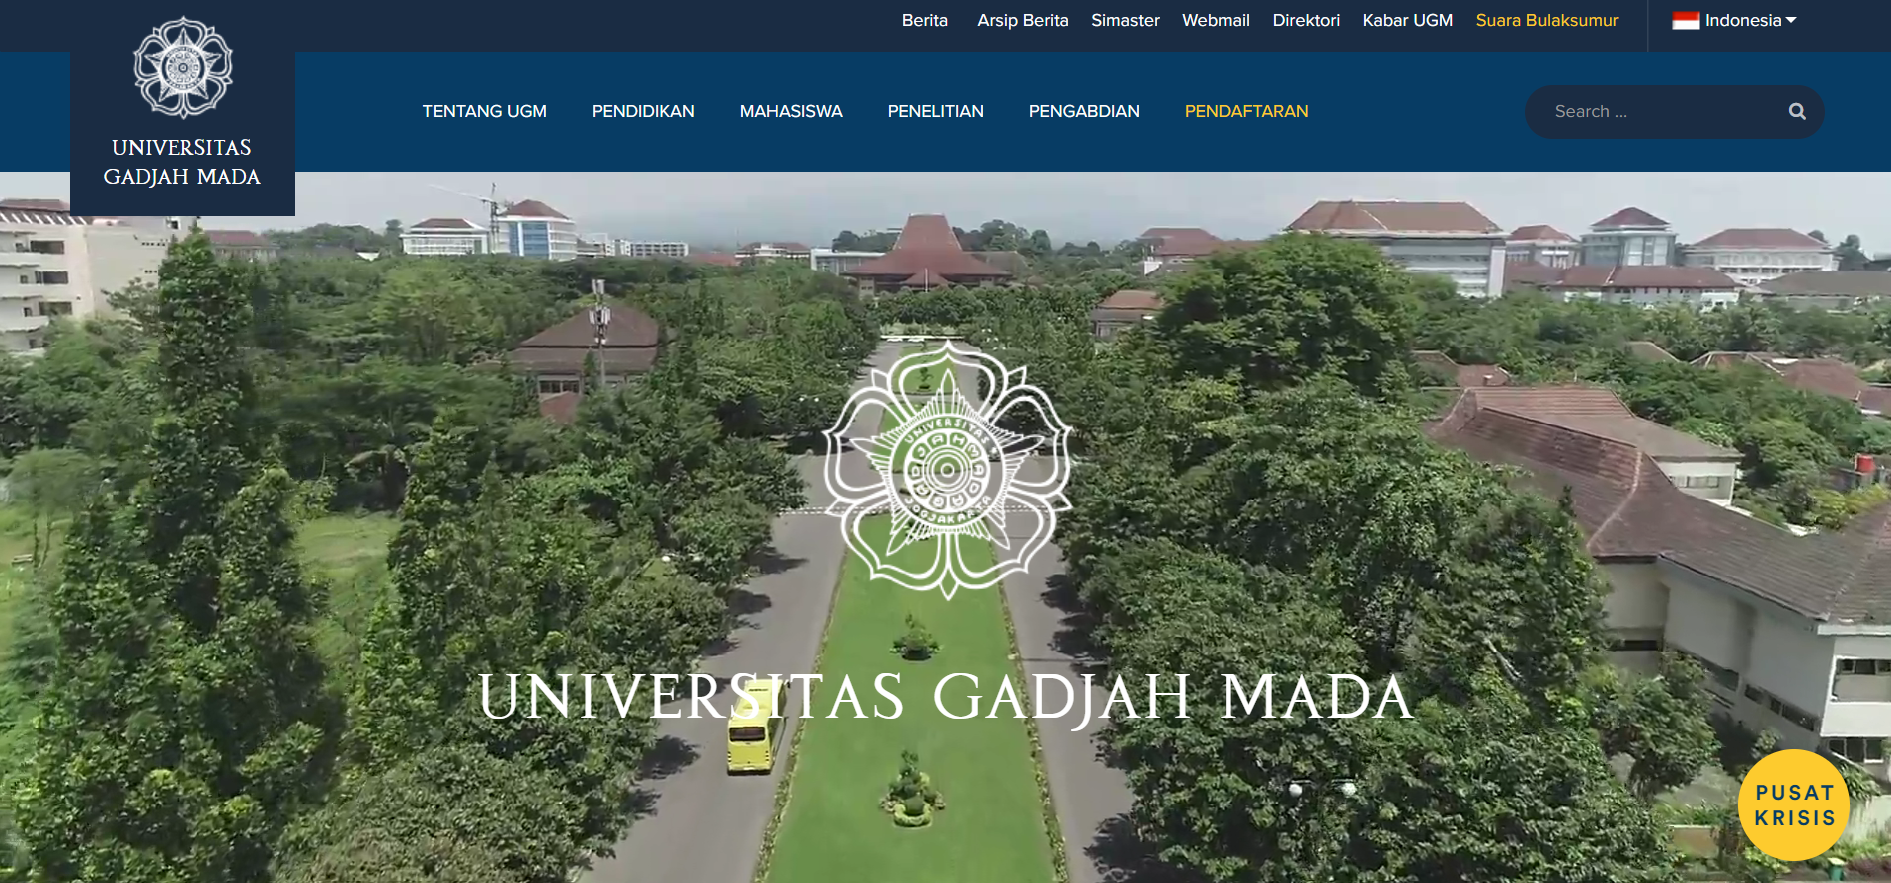 Website Instansi Universitas